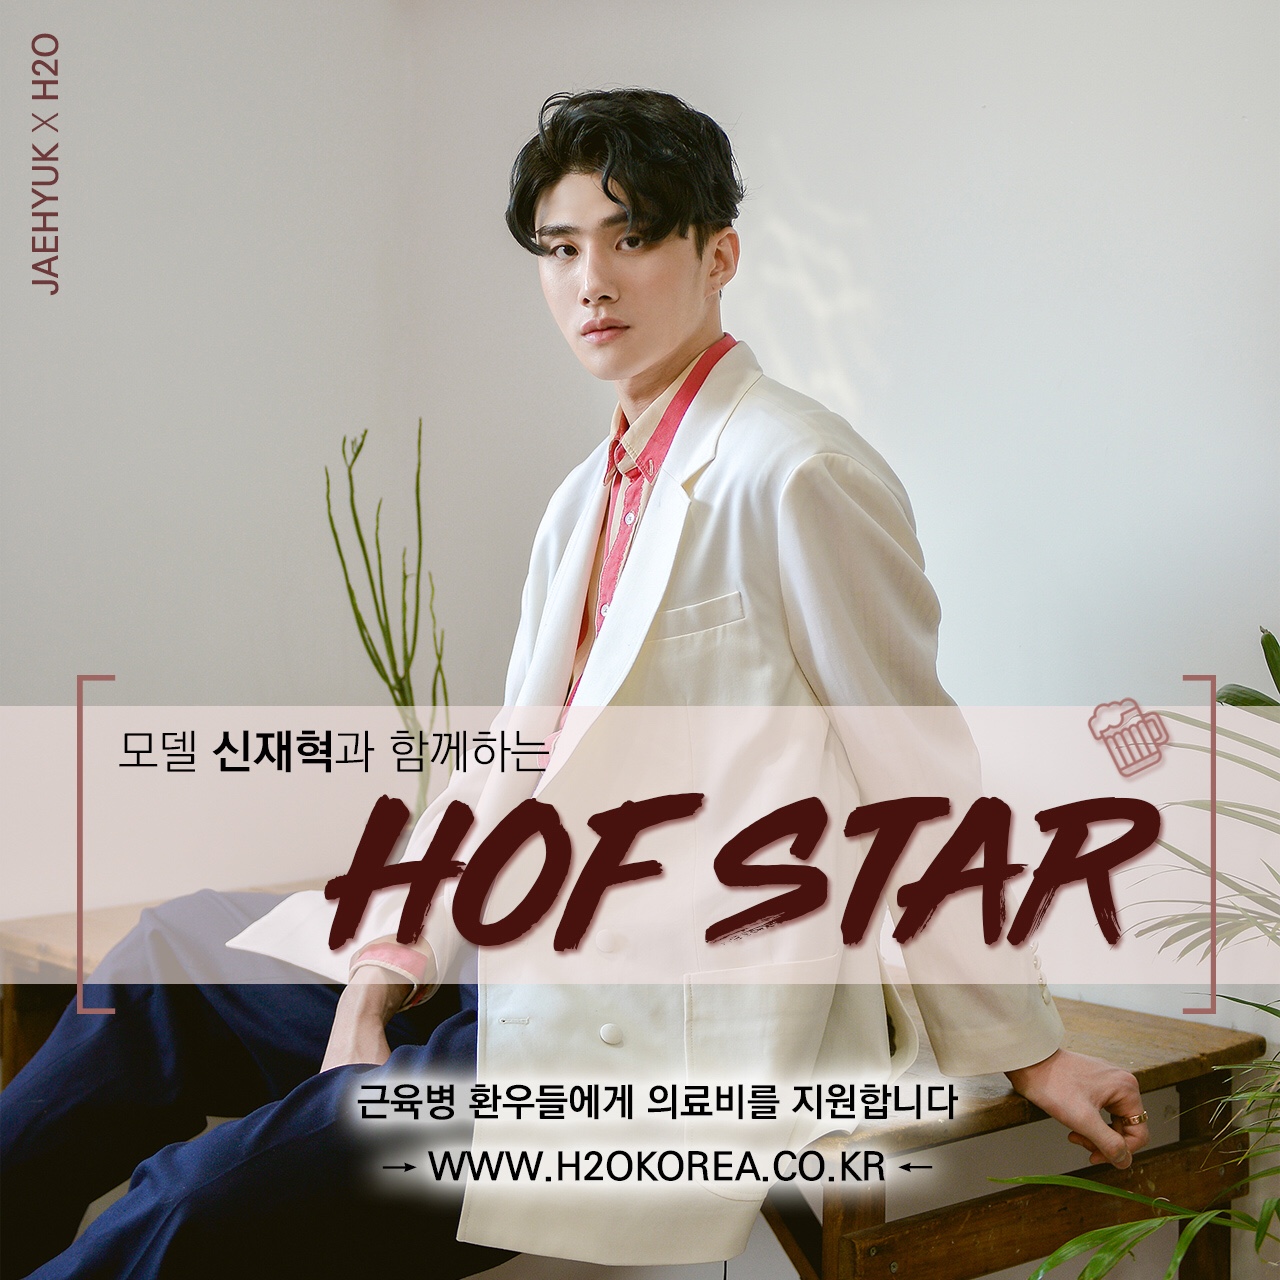 핫한 모델 신재혁, 특별한 캠페인 ‘HOF STAR’ 동참!